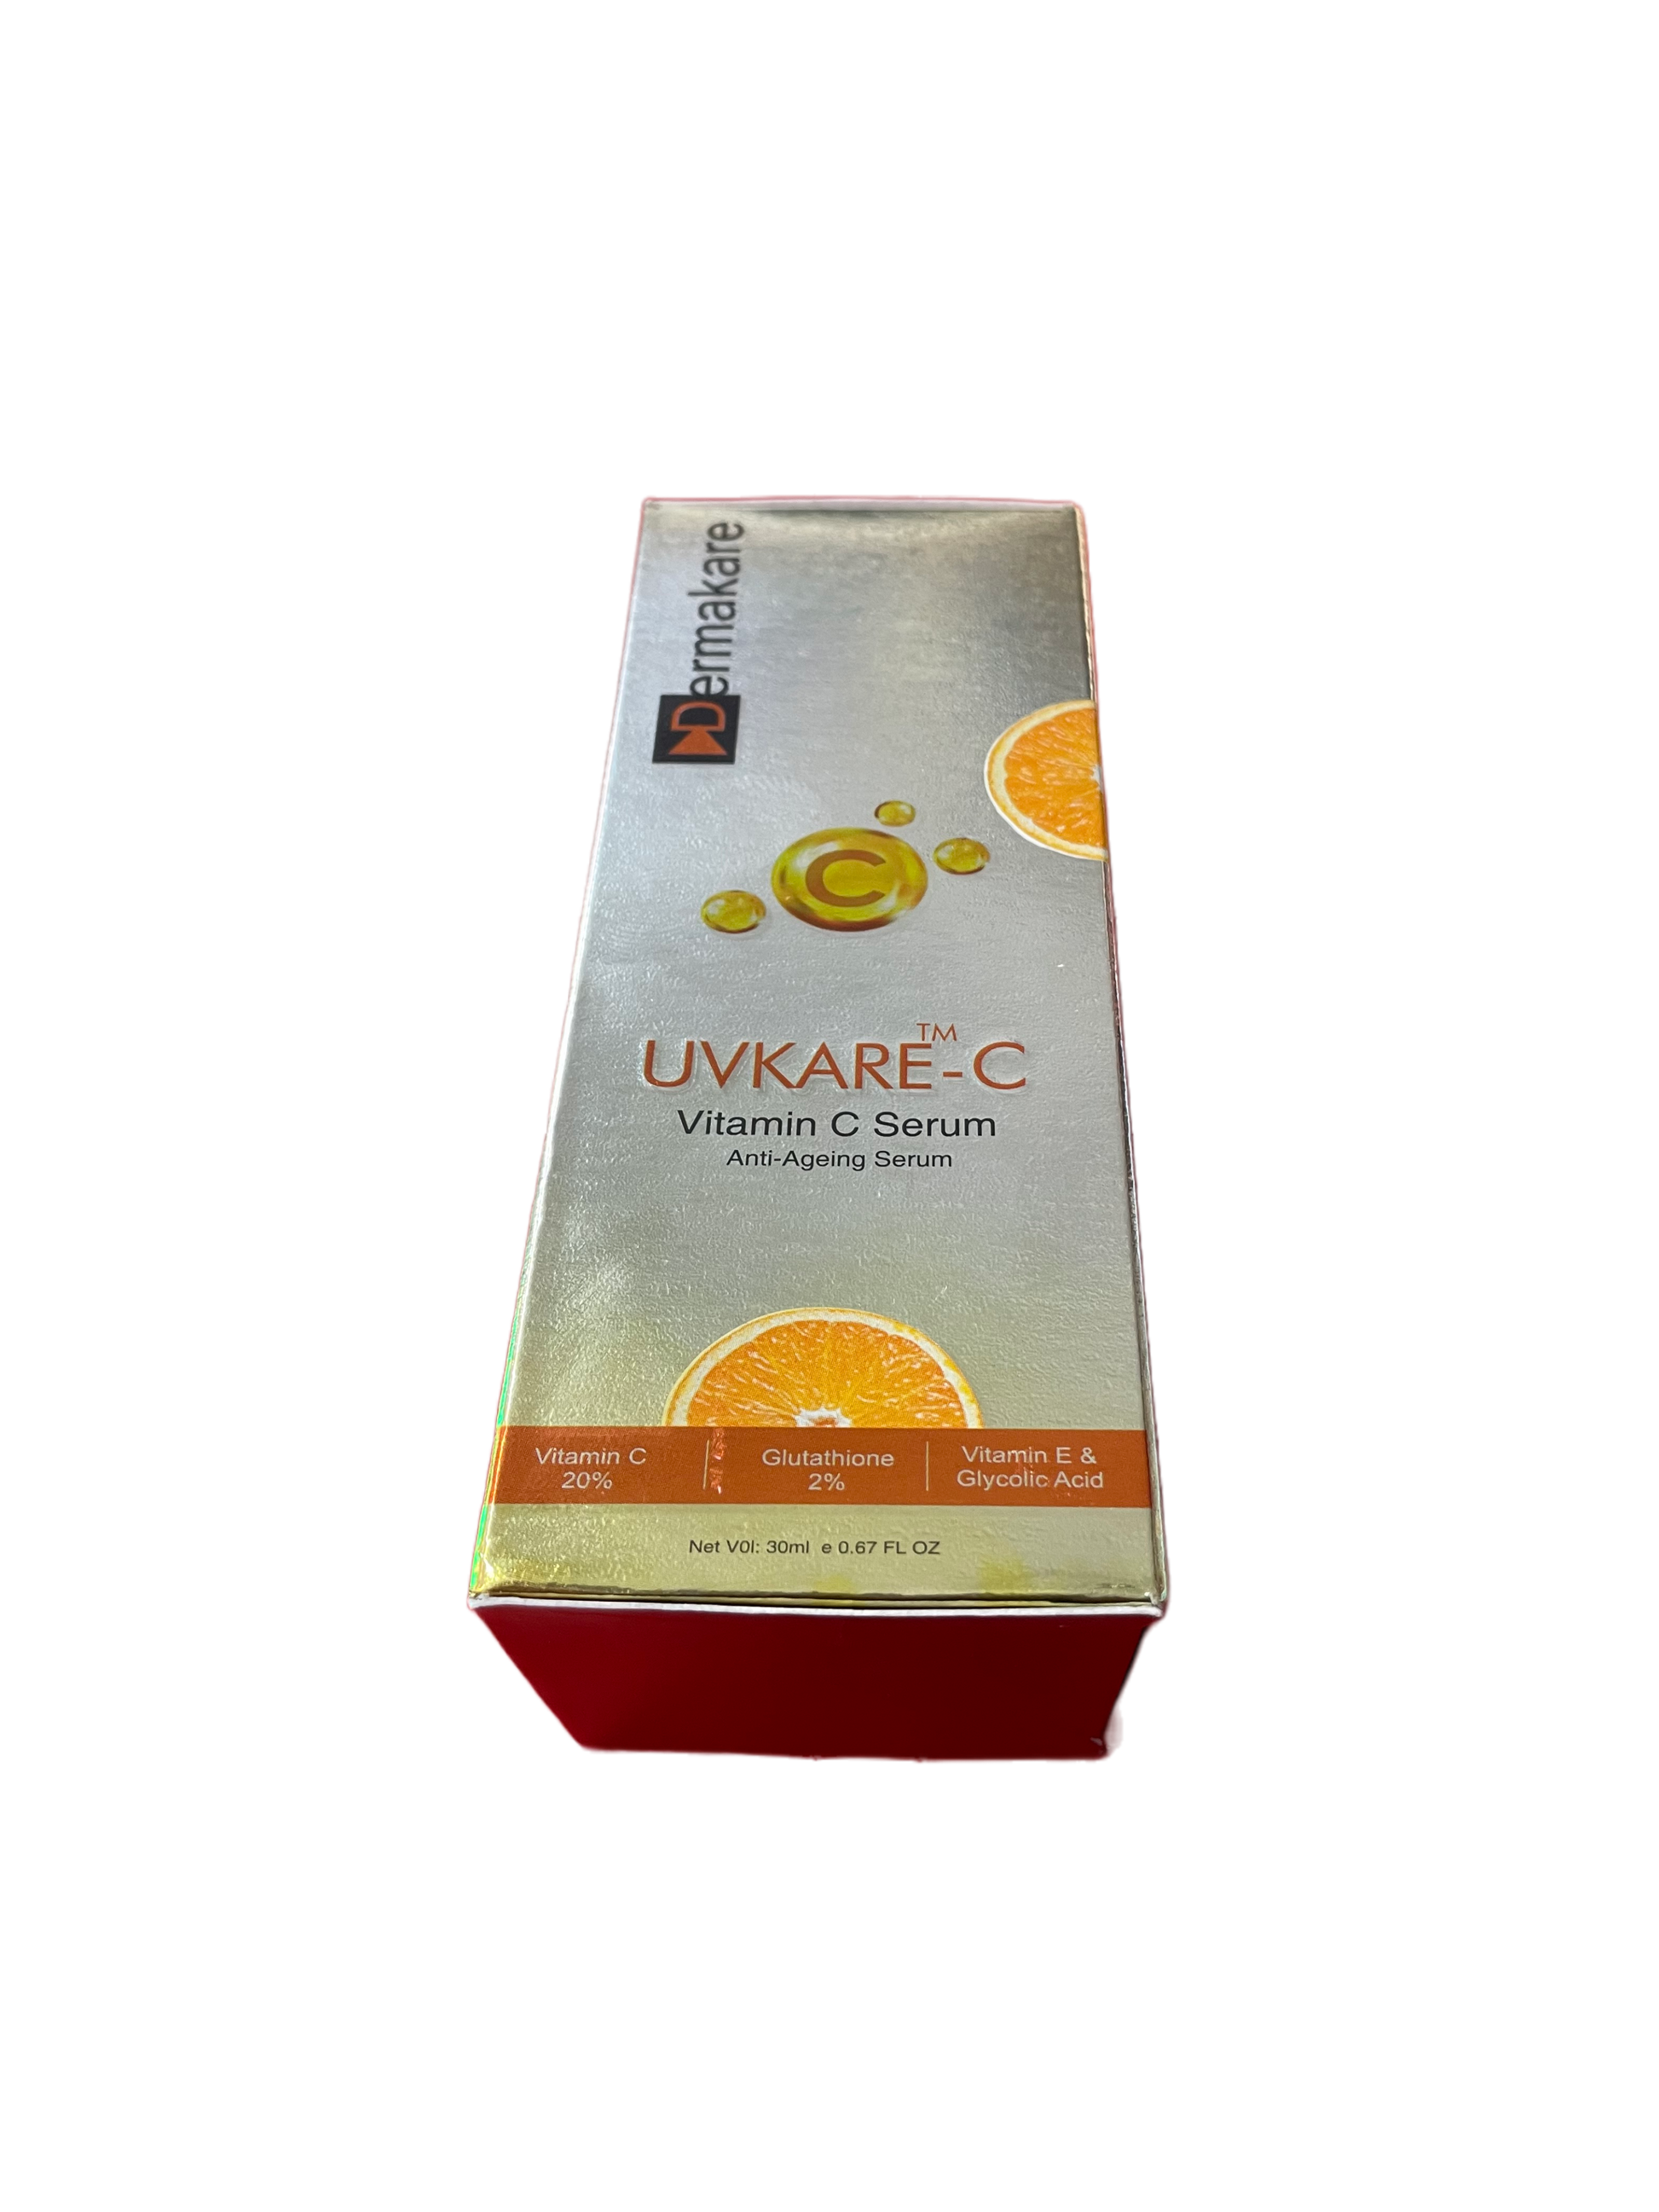 UVKare-C Vitamin C Serum